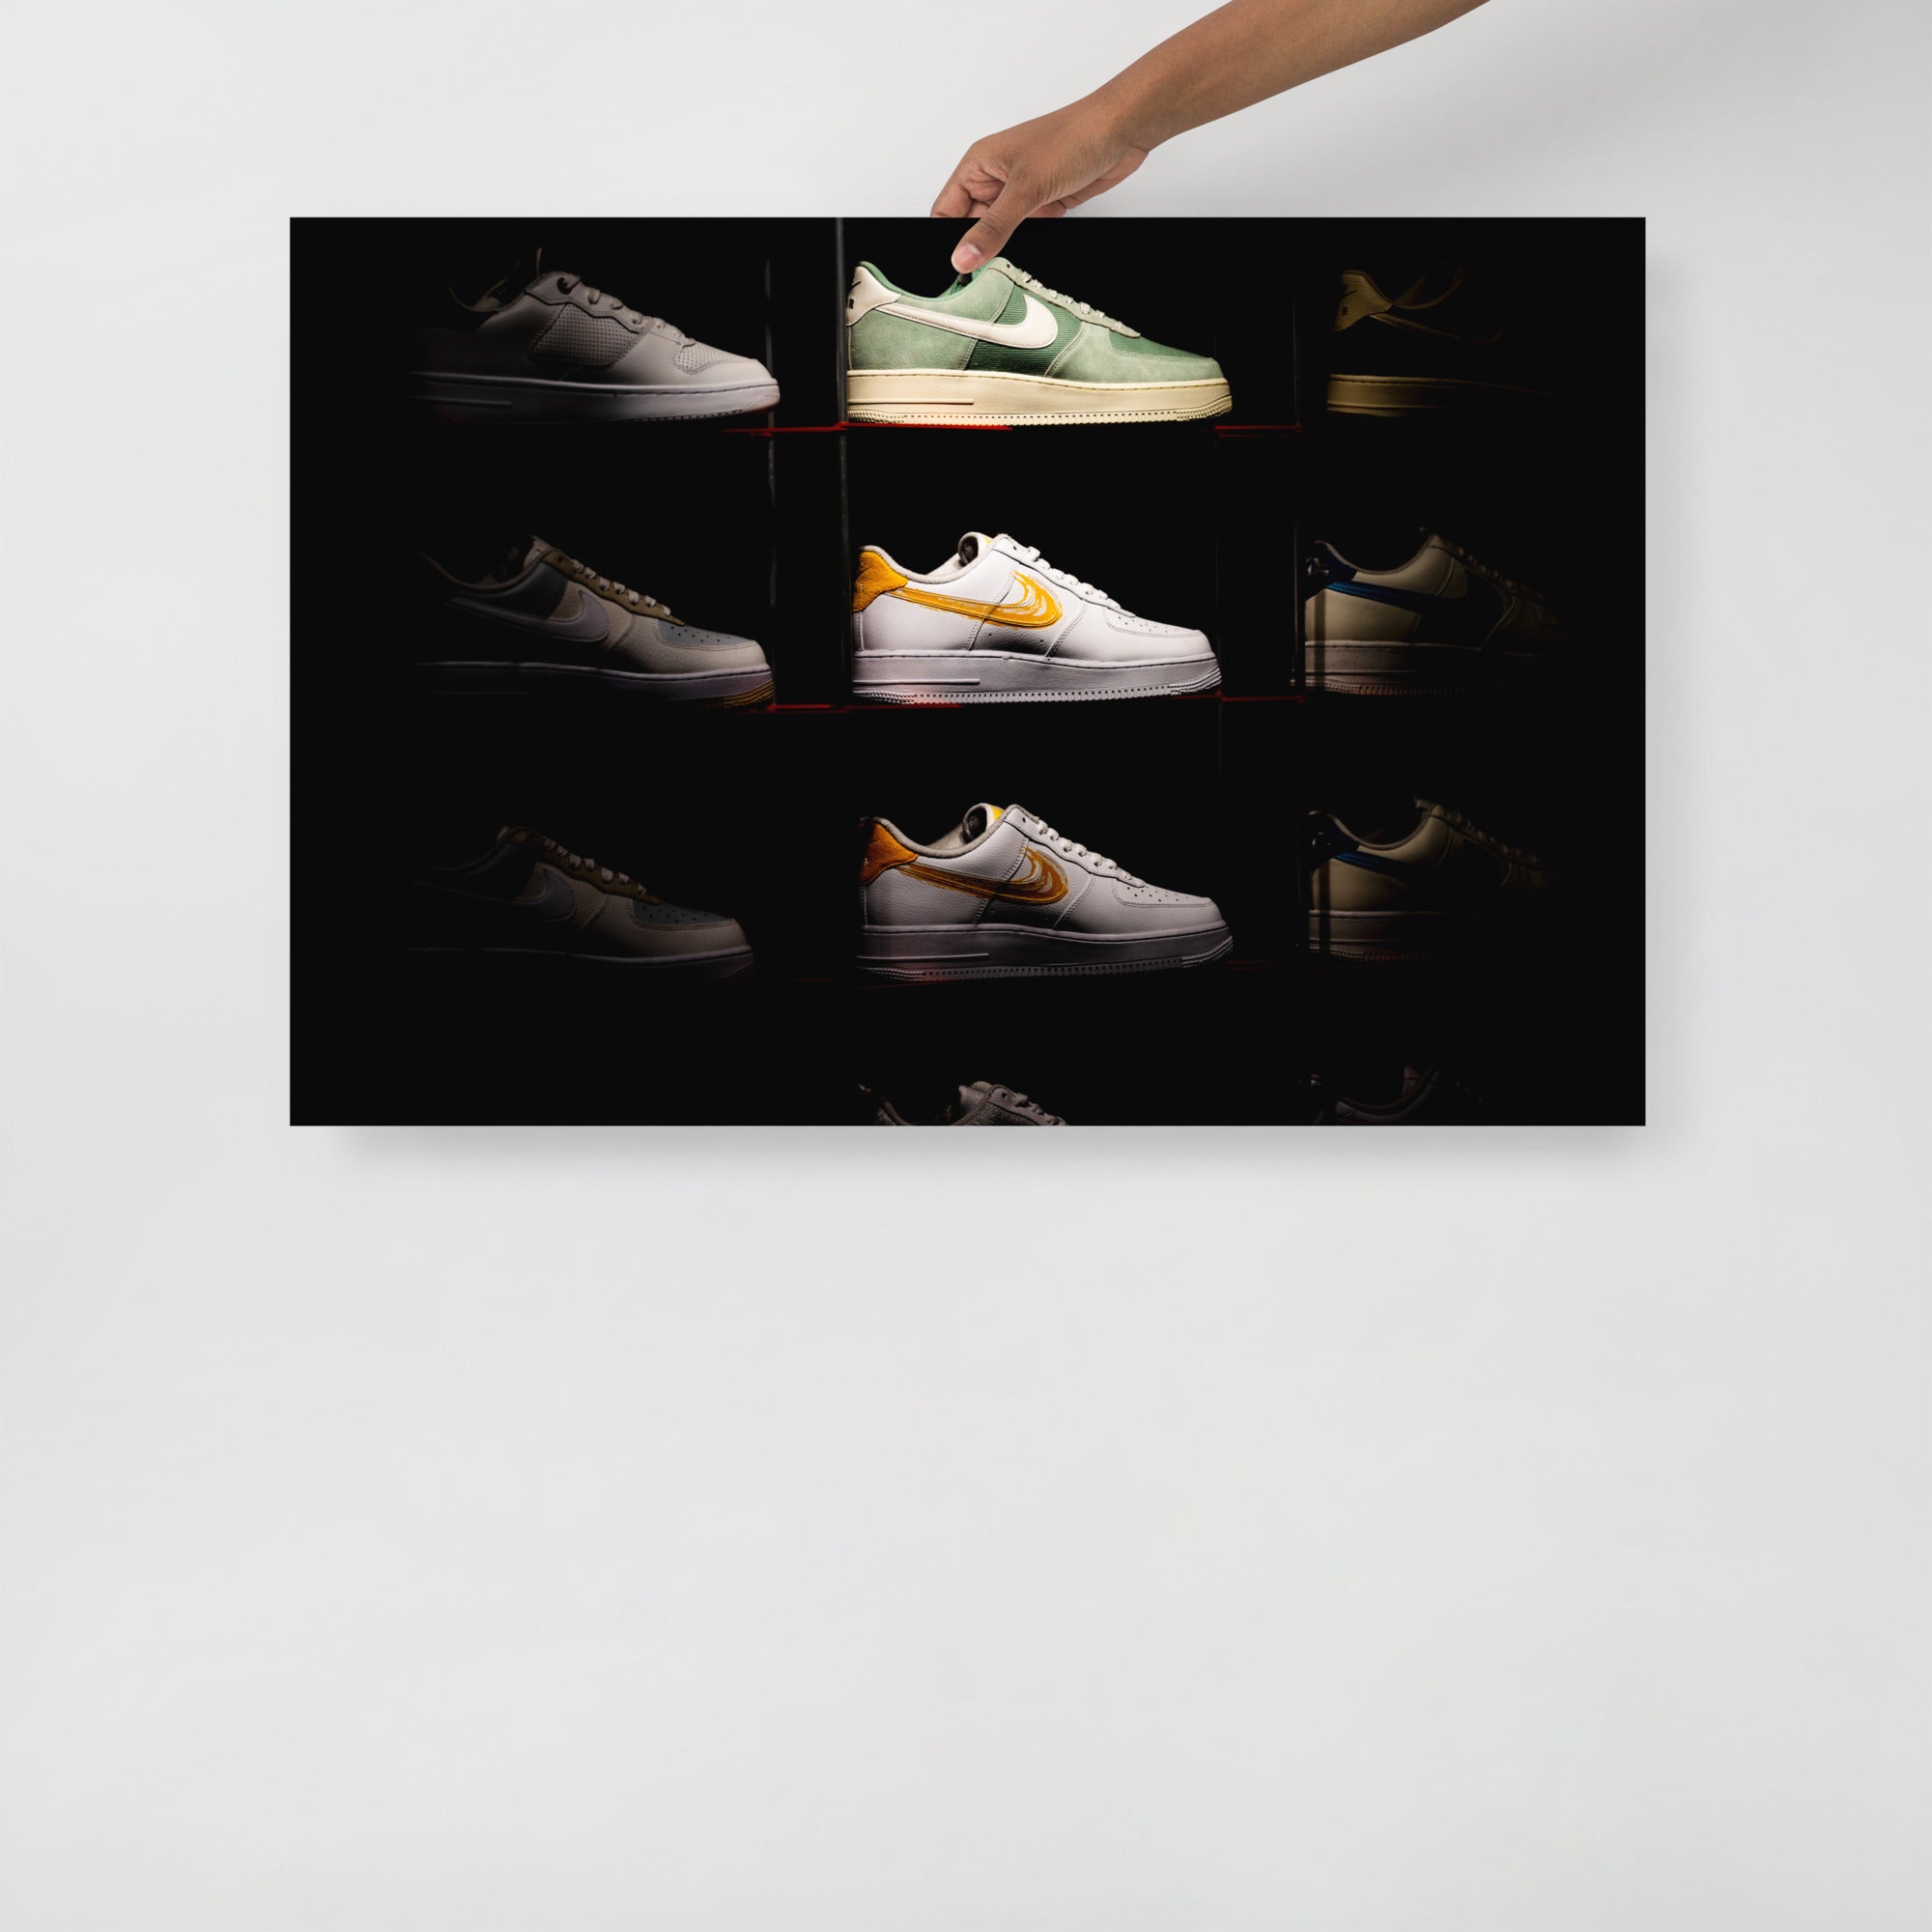 Poster mural - Vitrine Nike – Photographie d'art – Poster photographie, photographie murale et des posters muraux unique au monde. La boutique de posters créée par Yann Peccard un Photographe français.